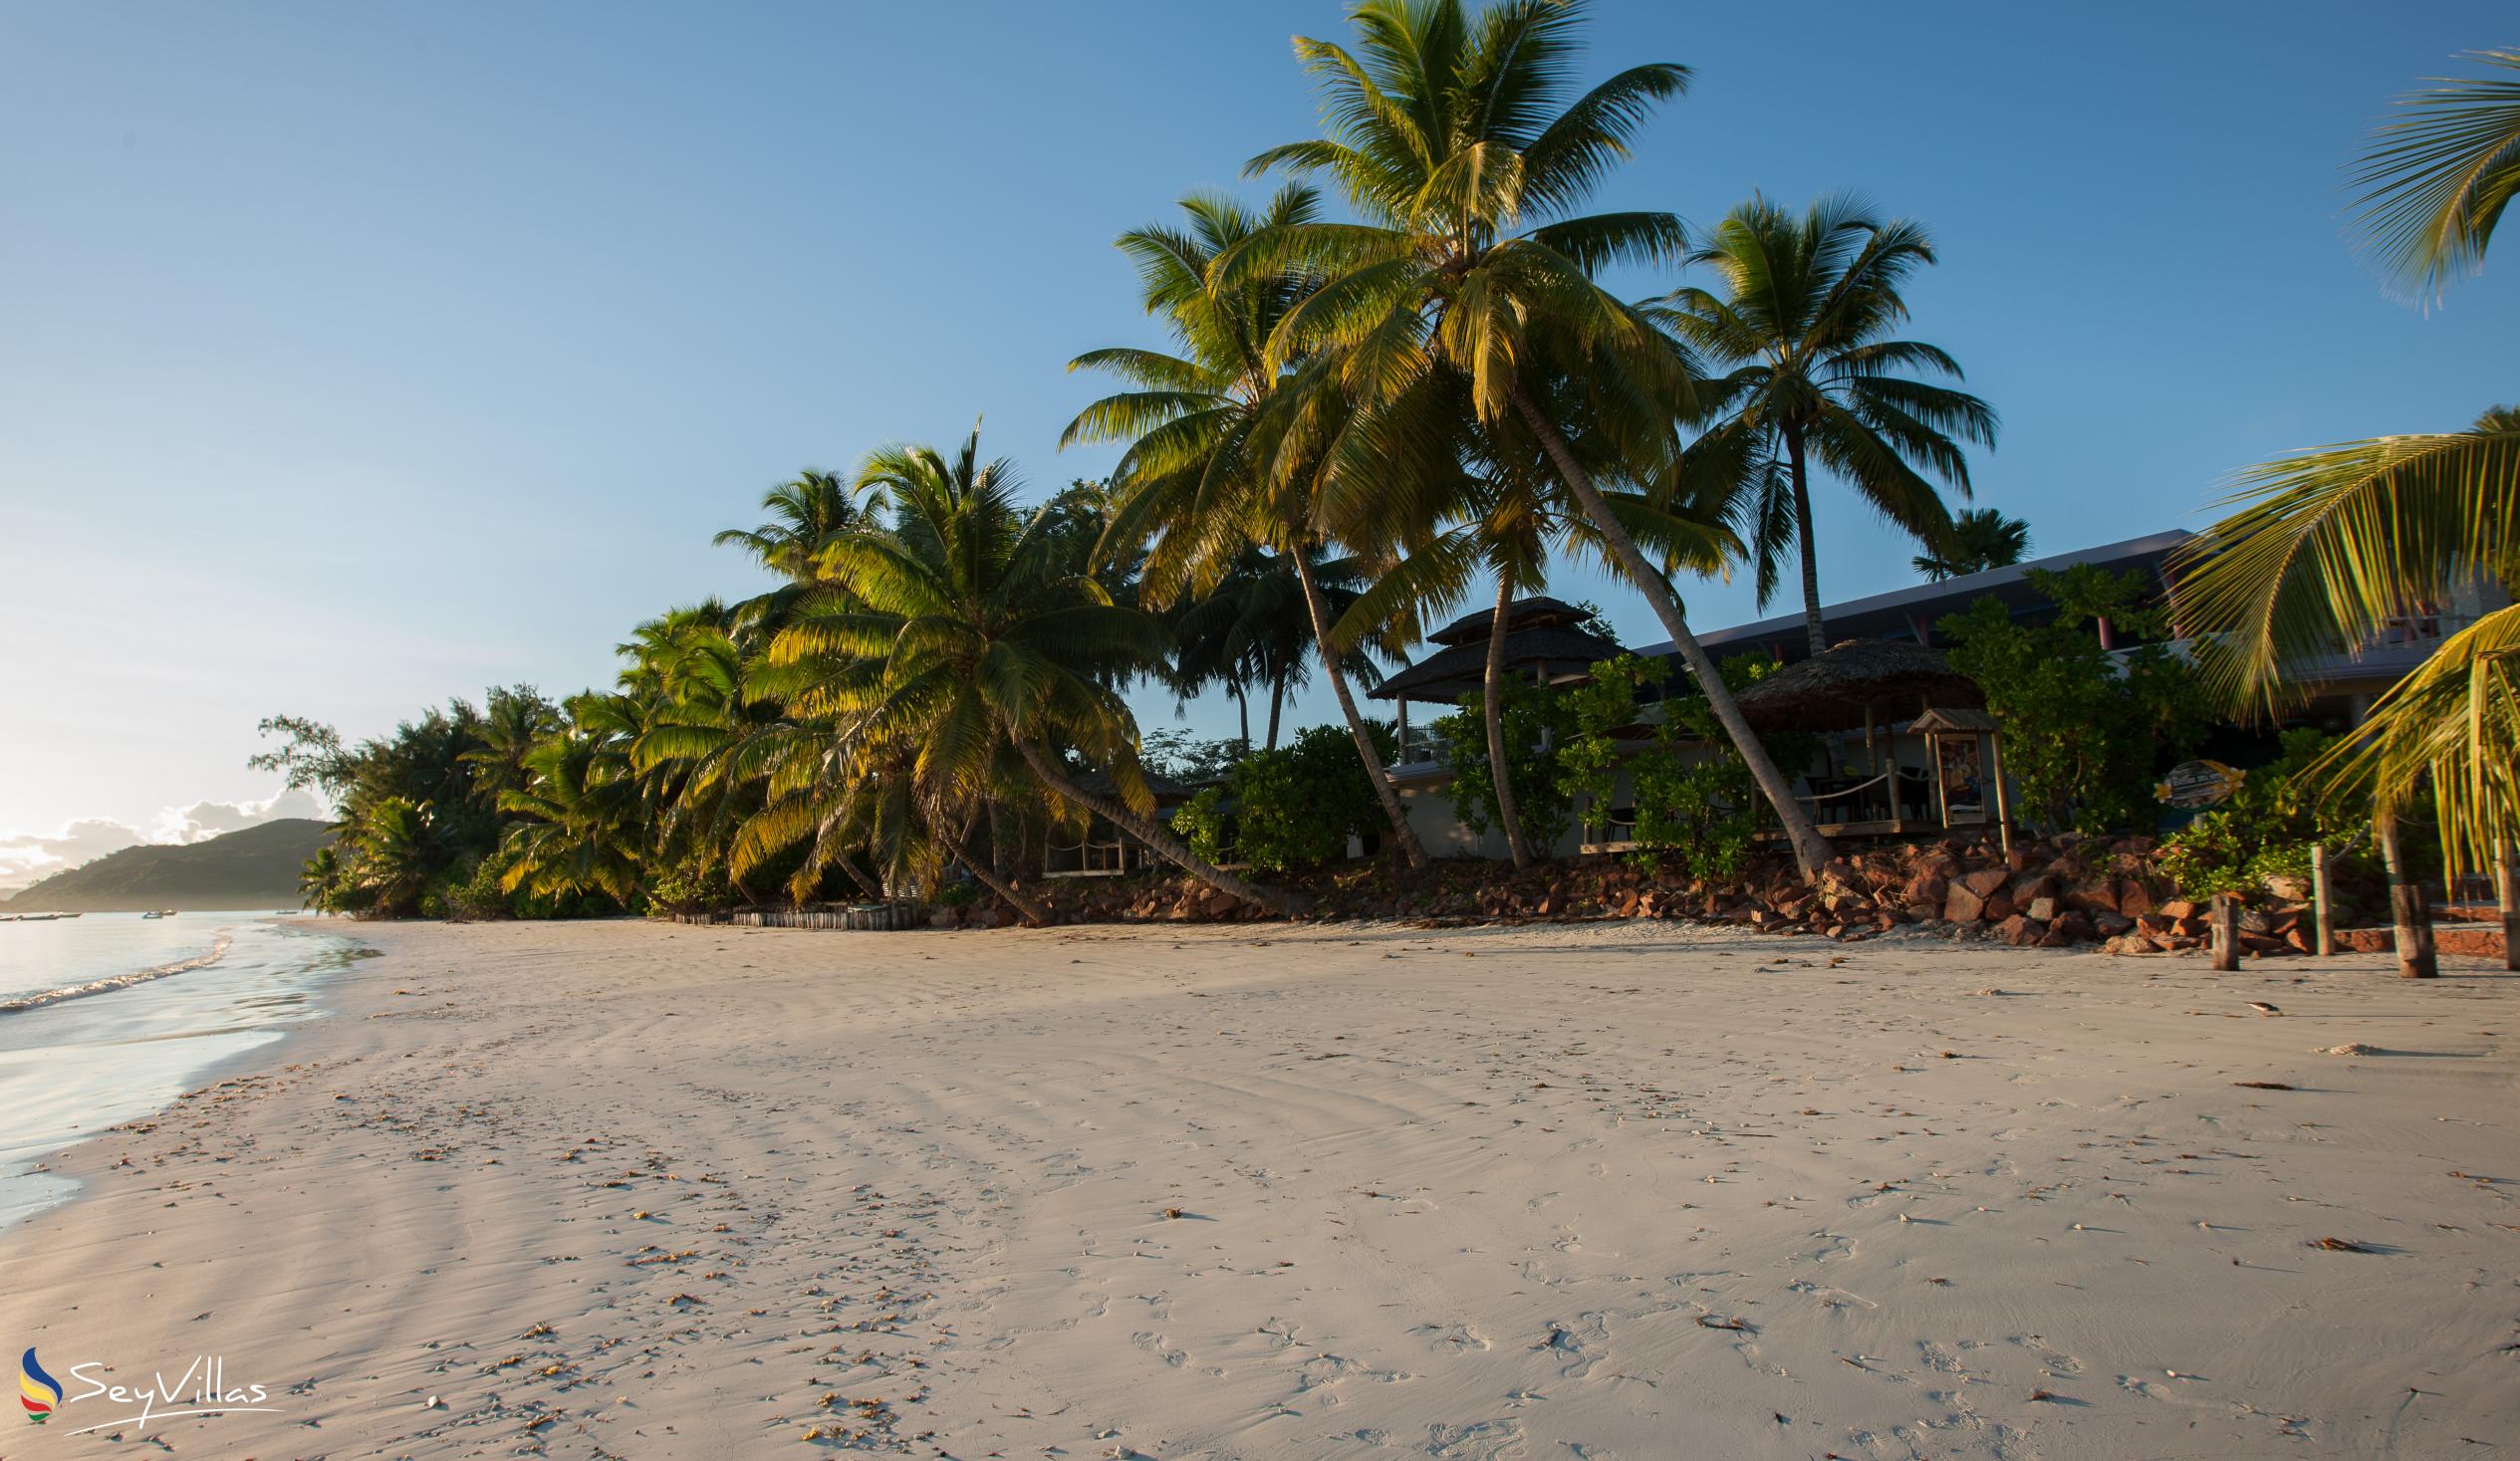 Foto 6: Paradise Sun Hotel - Aussenbereich - Praslin (Seychellen)